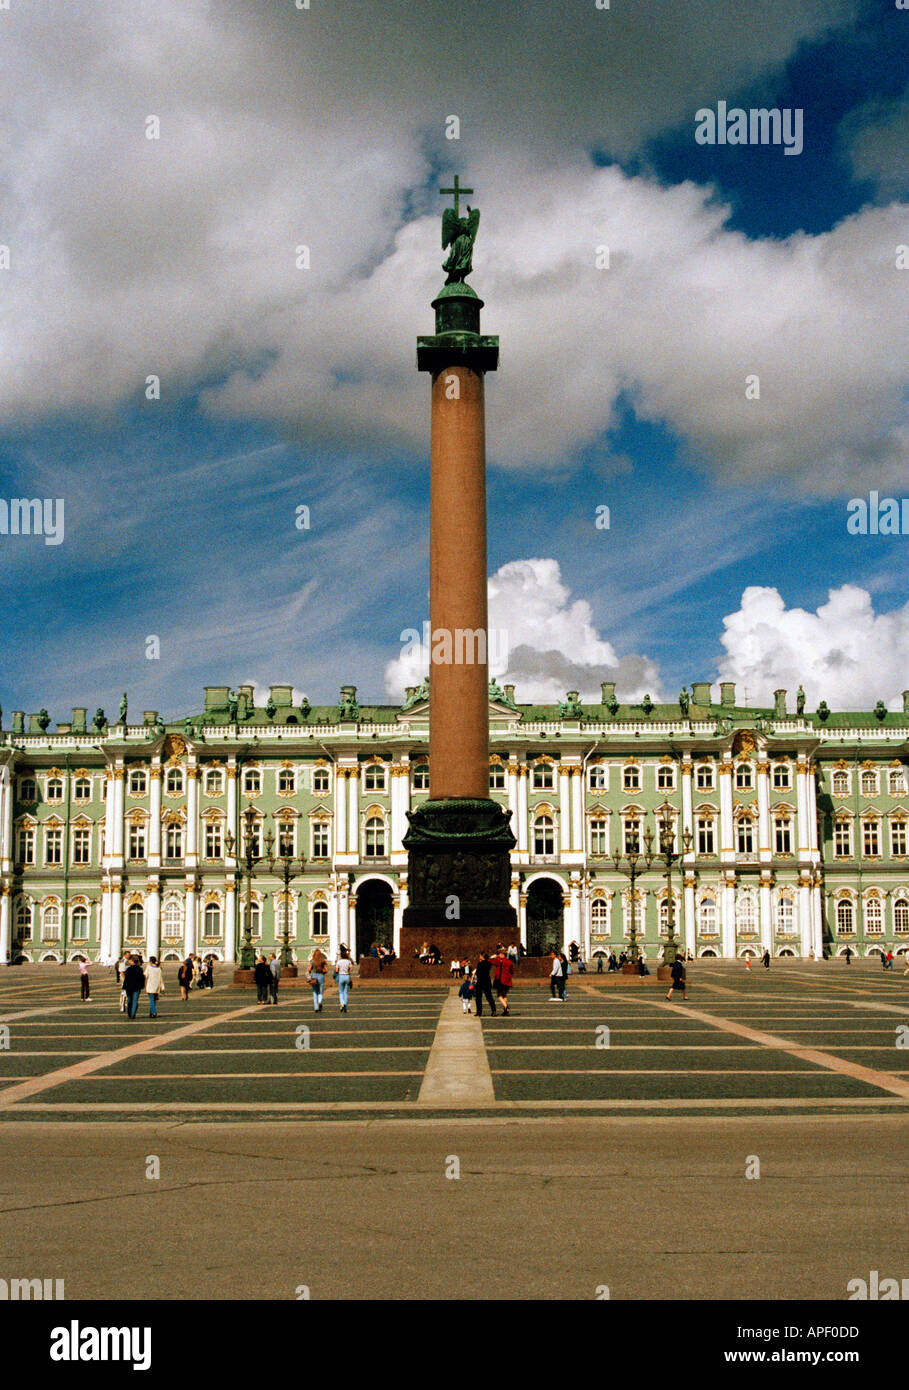 La place du palais et l'Ermitage, Saint-Pétersbourg, Russie Banque D'Images